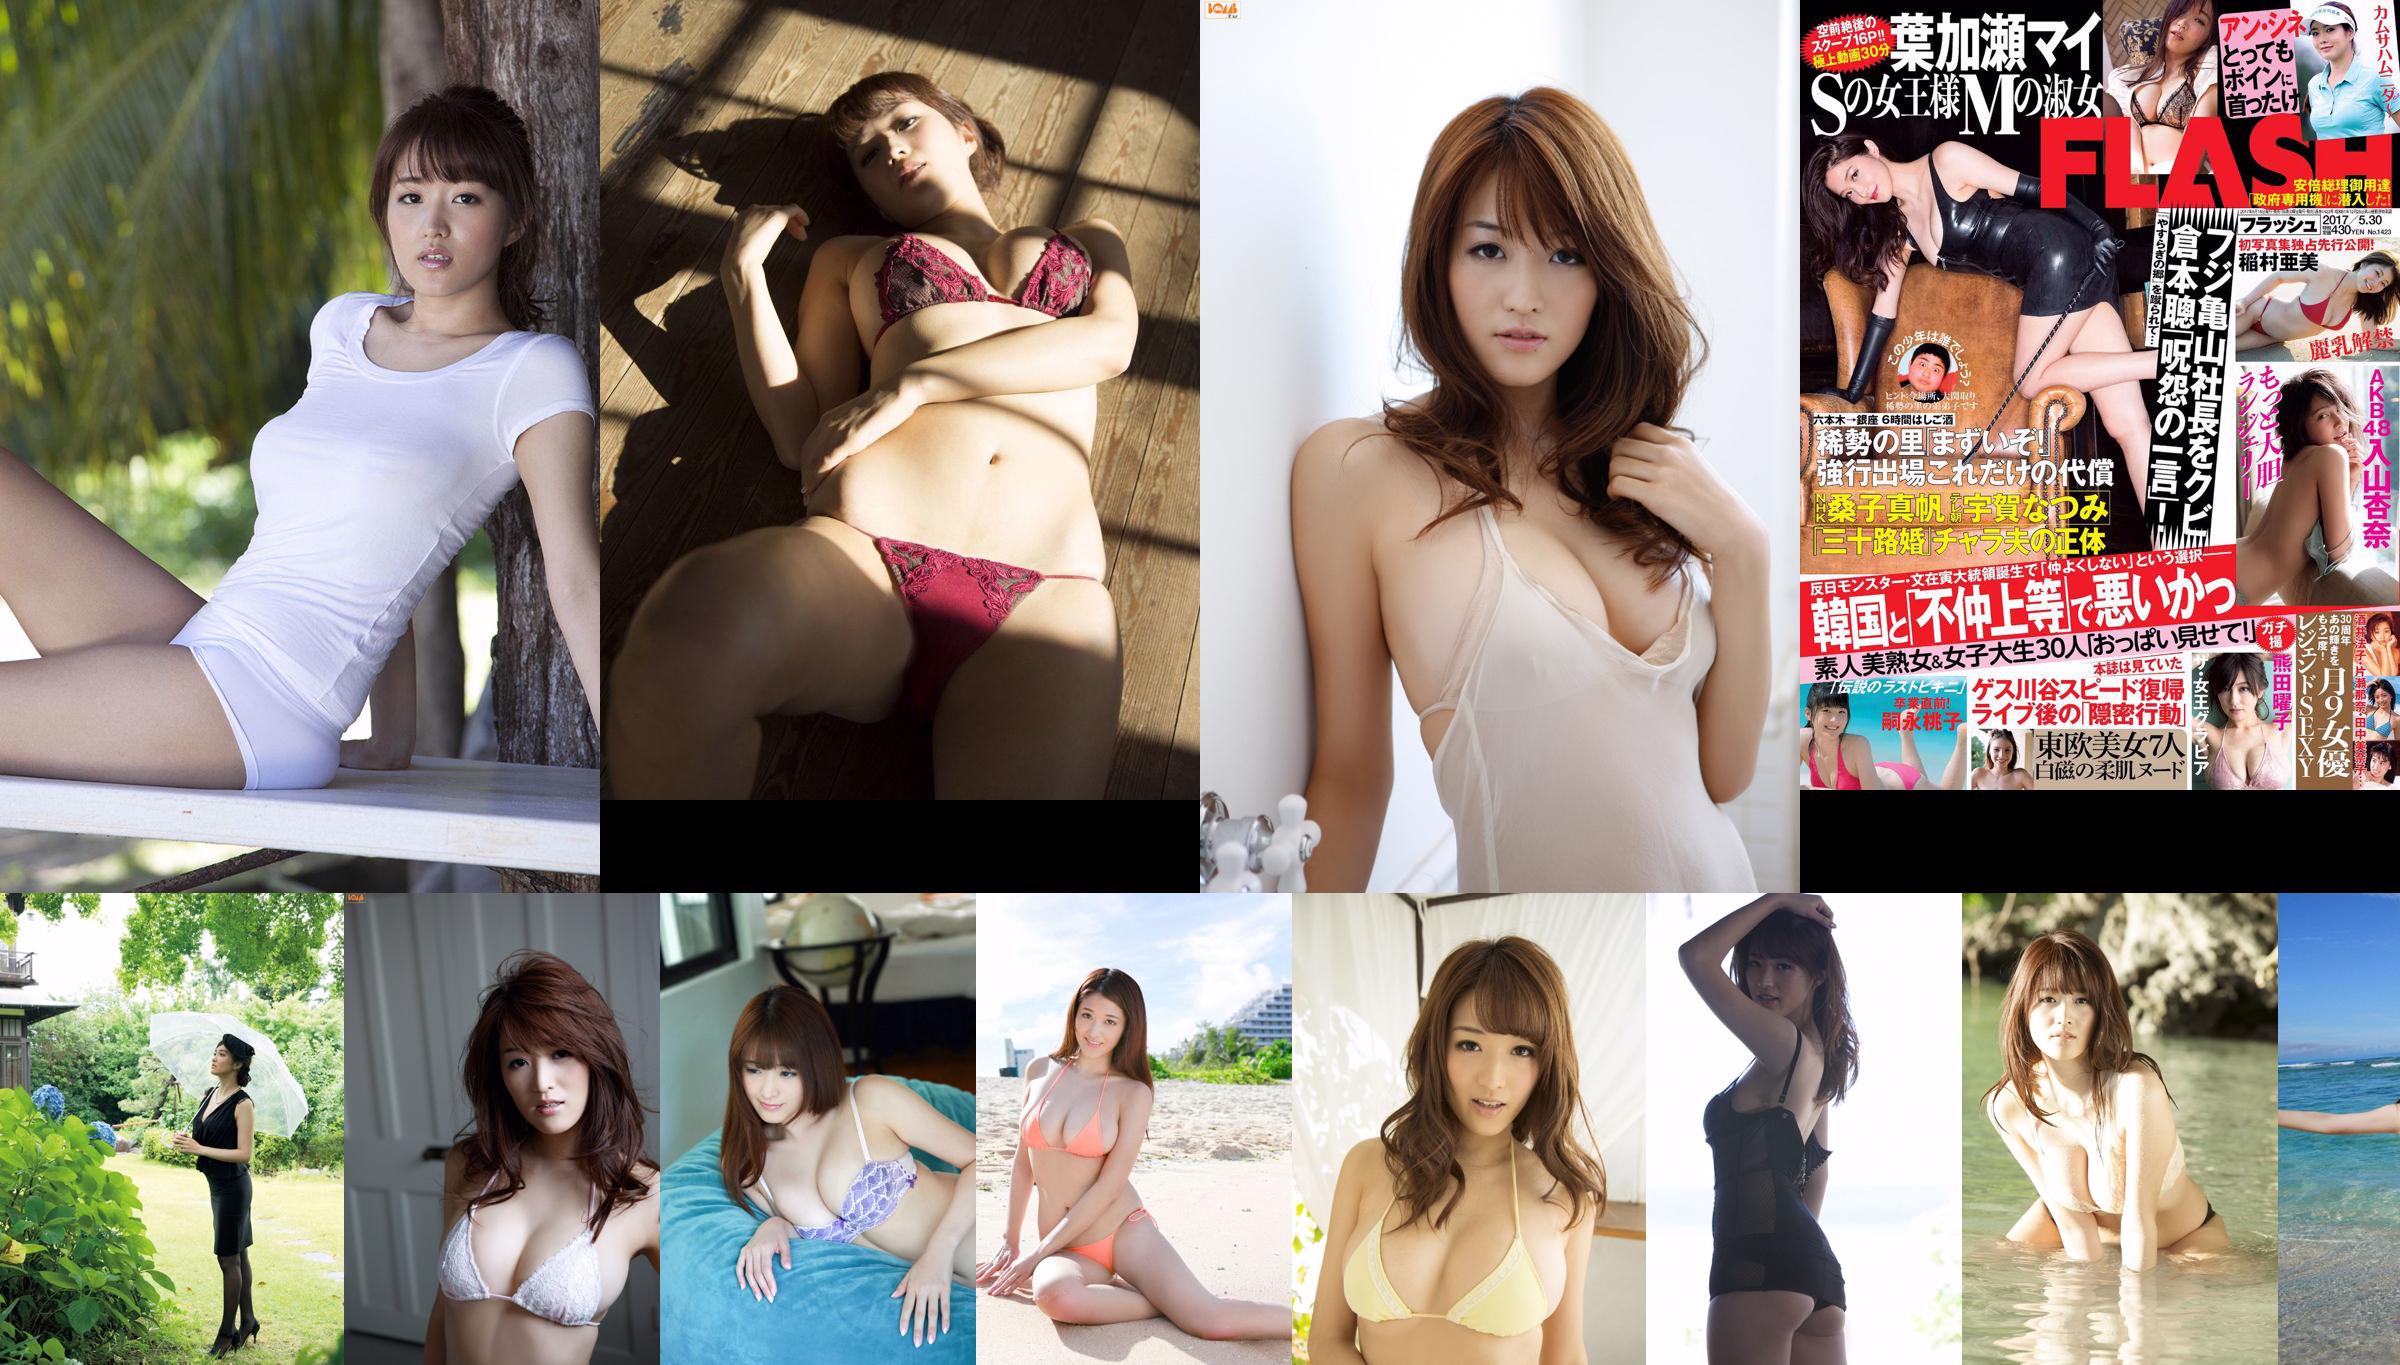 [Bomb.TV] Edição de maio de 2012 Mai Hakase Mai Hakase / Mai Hakase No.c87533 Página 7